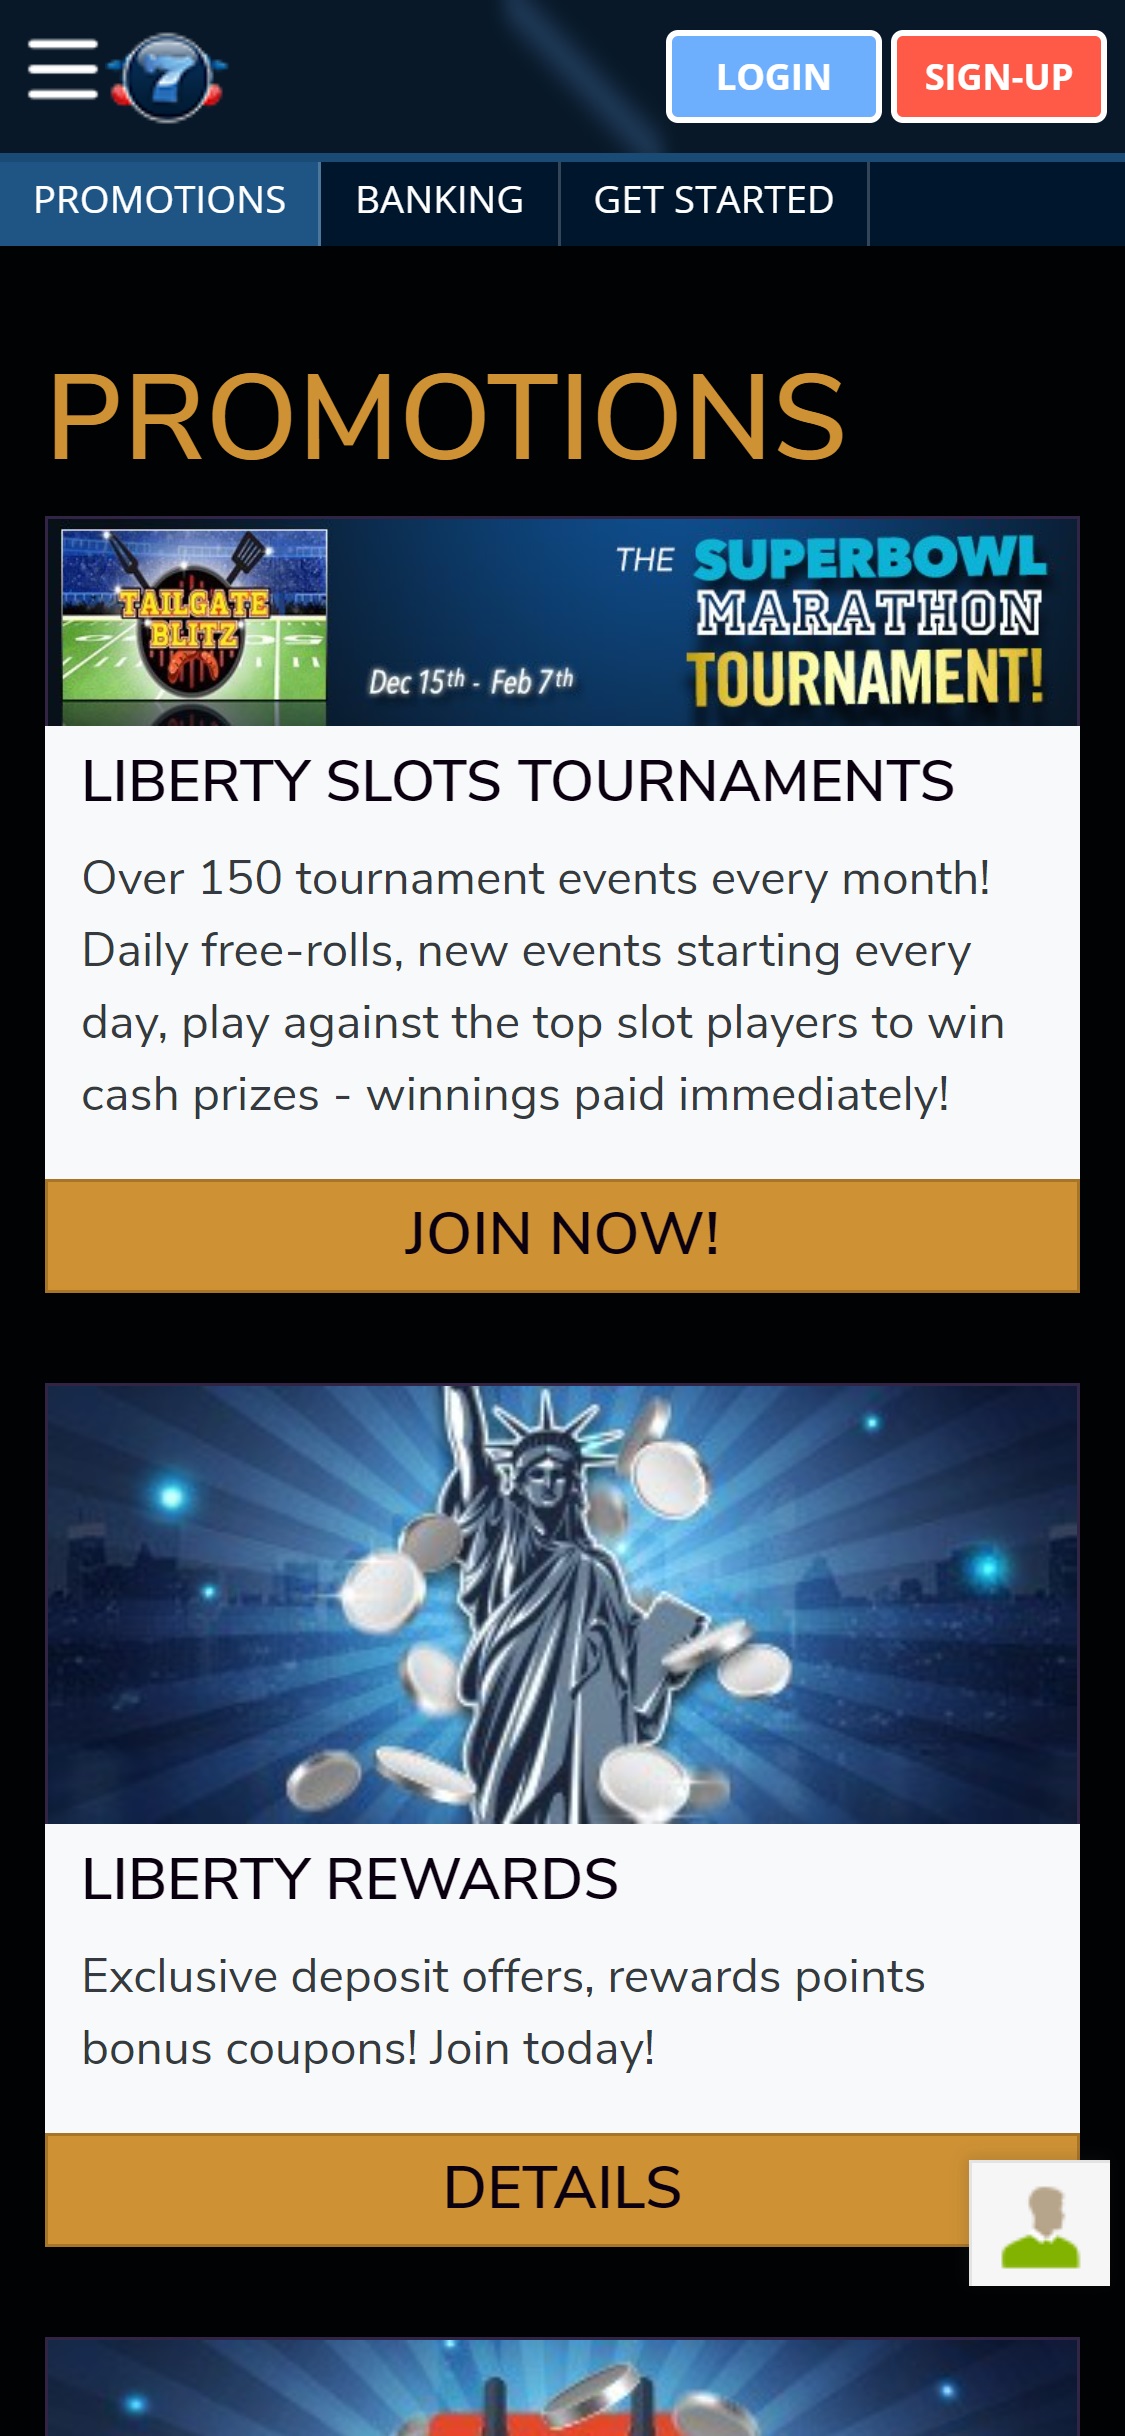 Liberty Slots Casino Mobile No Deposit Bonus Review